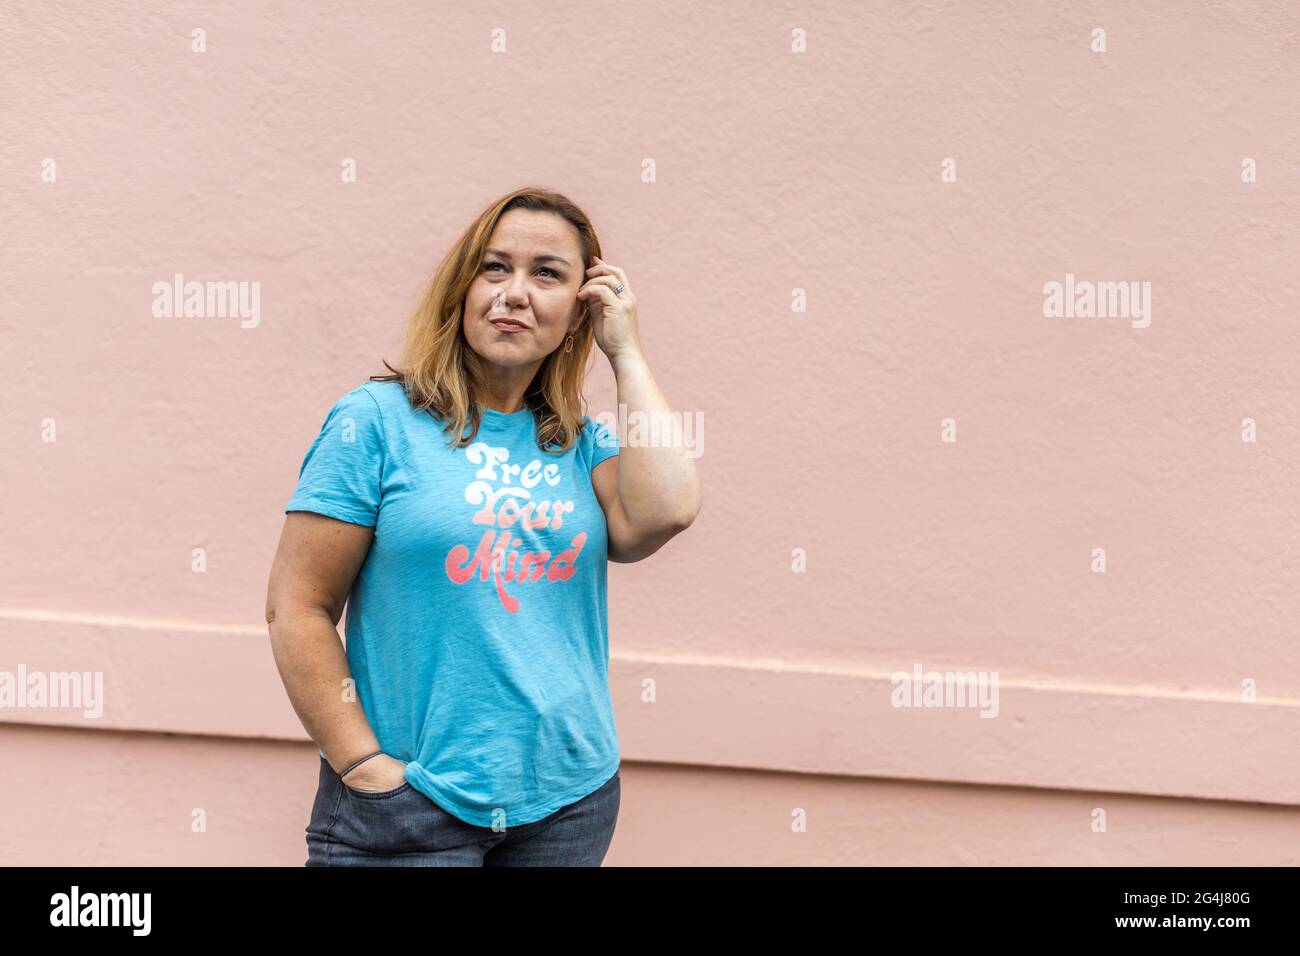 un'immagine completa di una donna in una t-shirt libera la tua mente con jeans Foto Stock